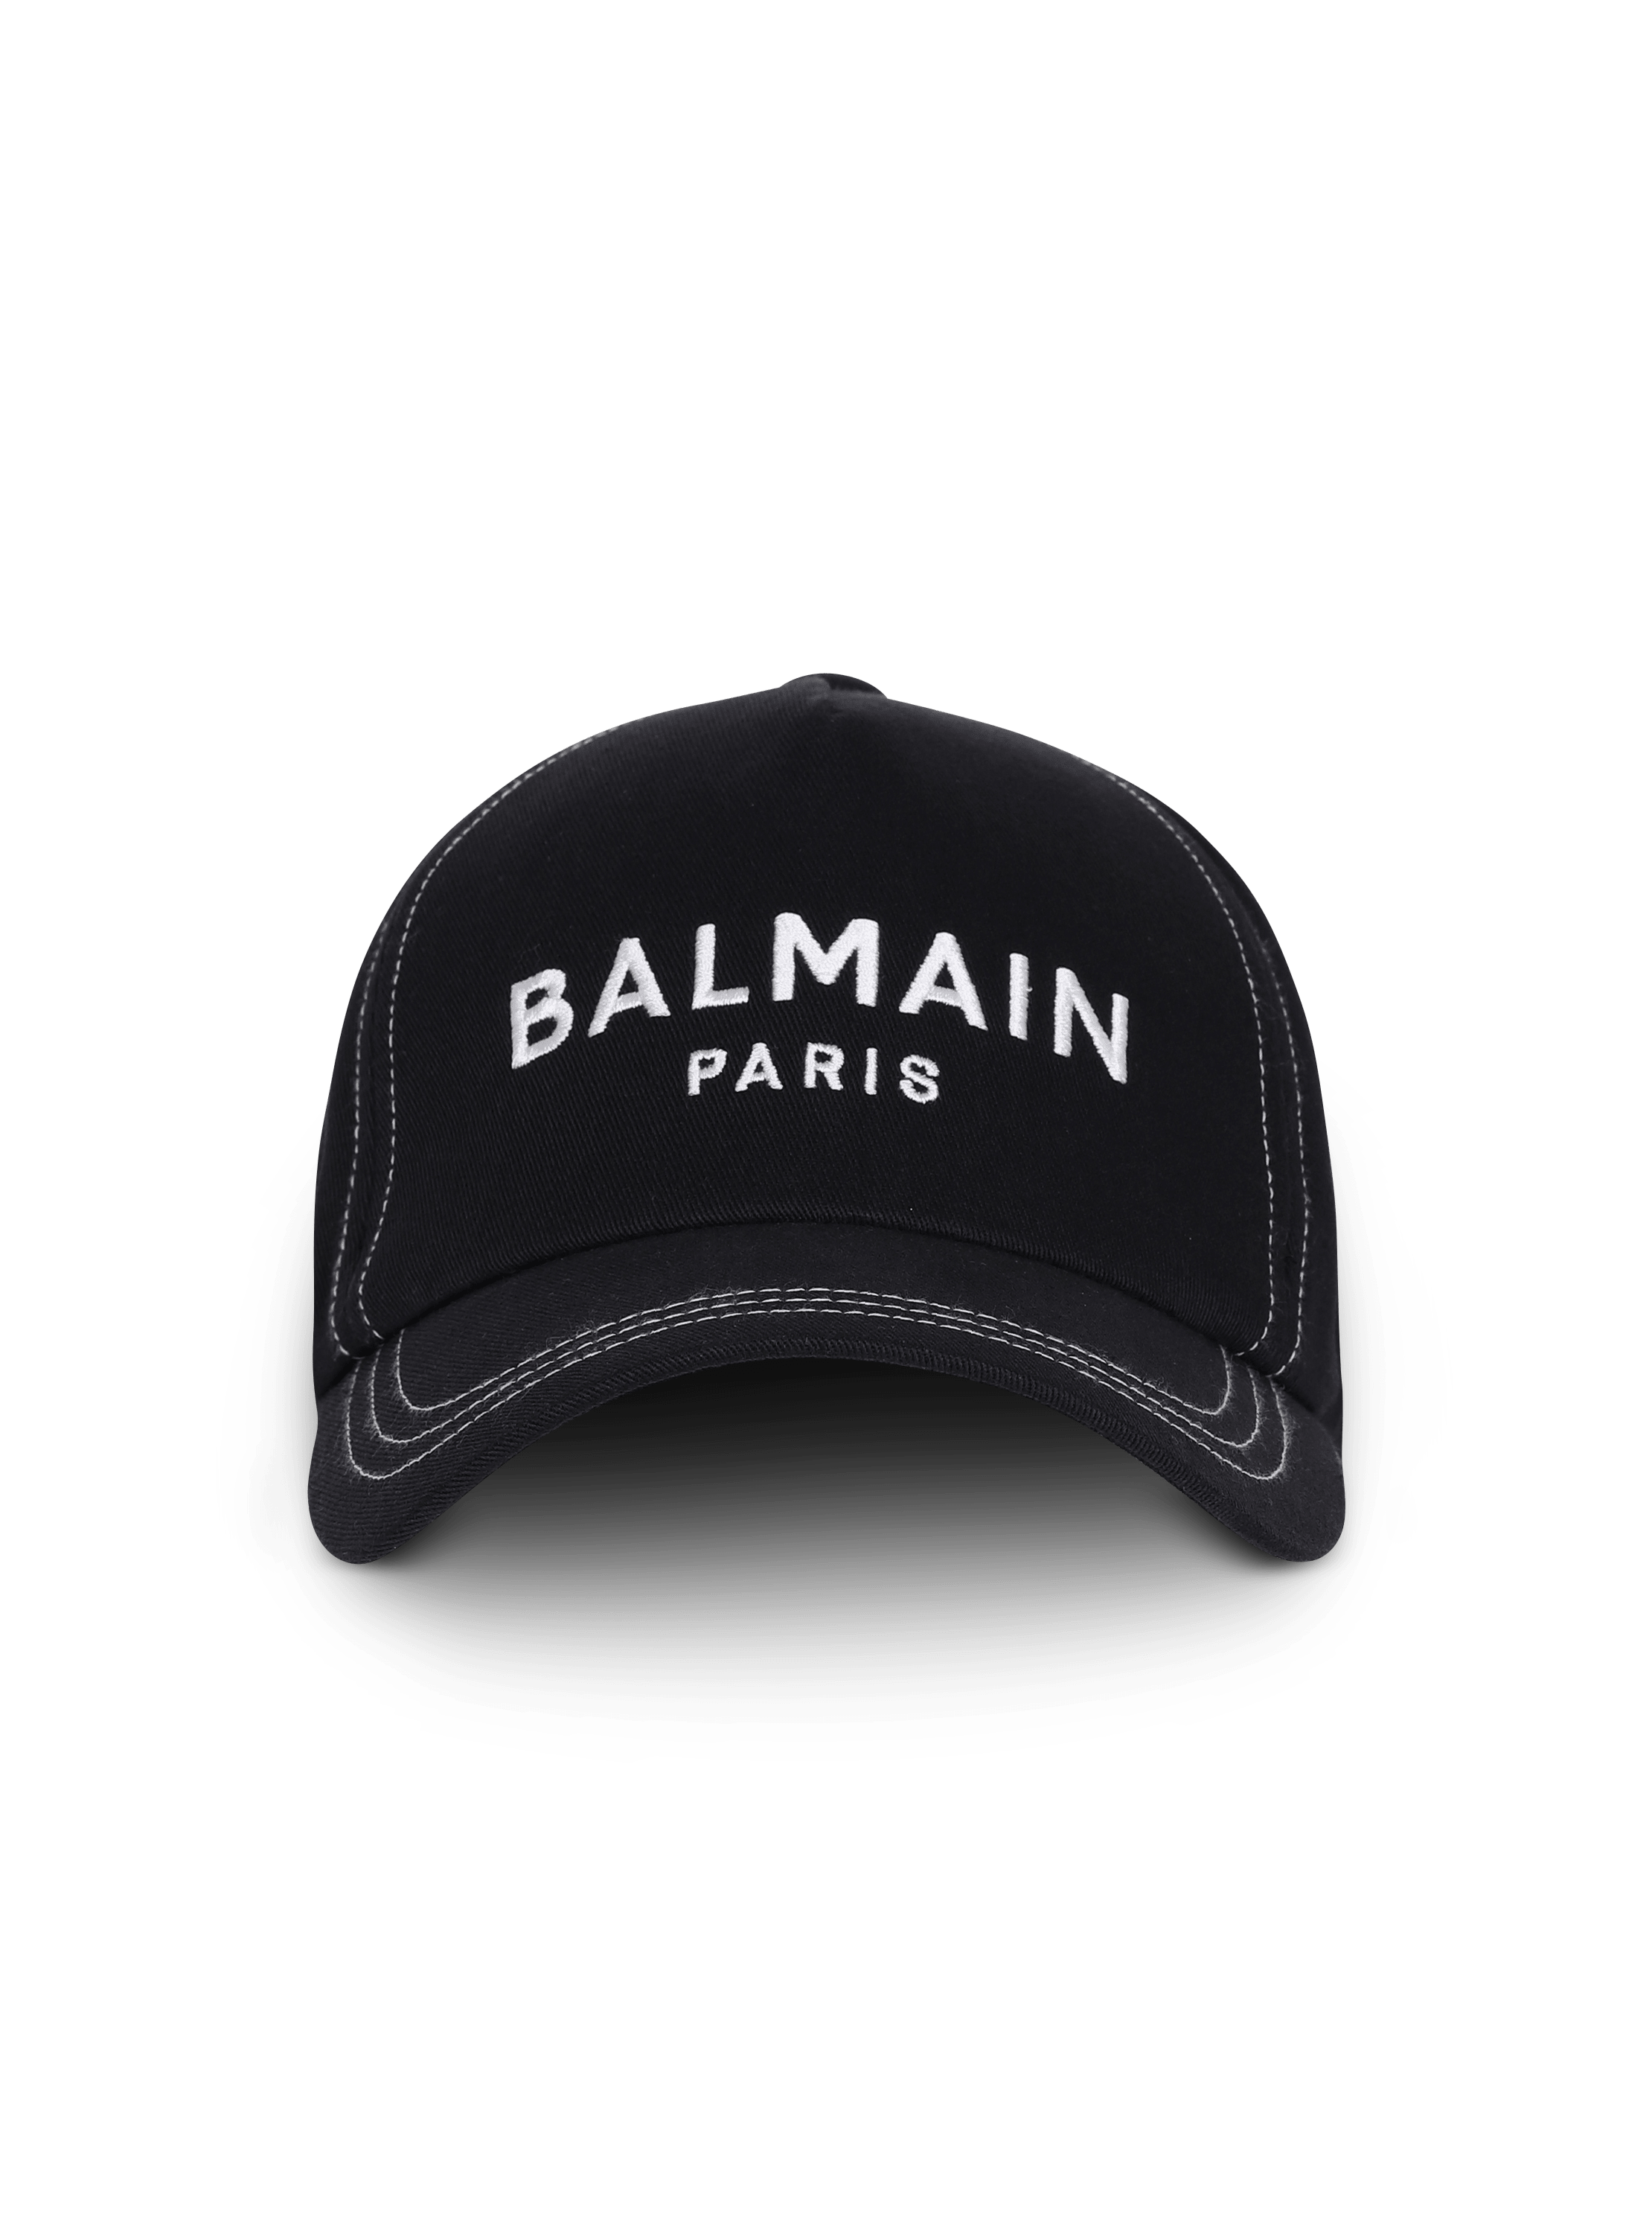 BALMAIN キャップ メンズ帽子